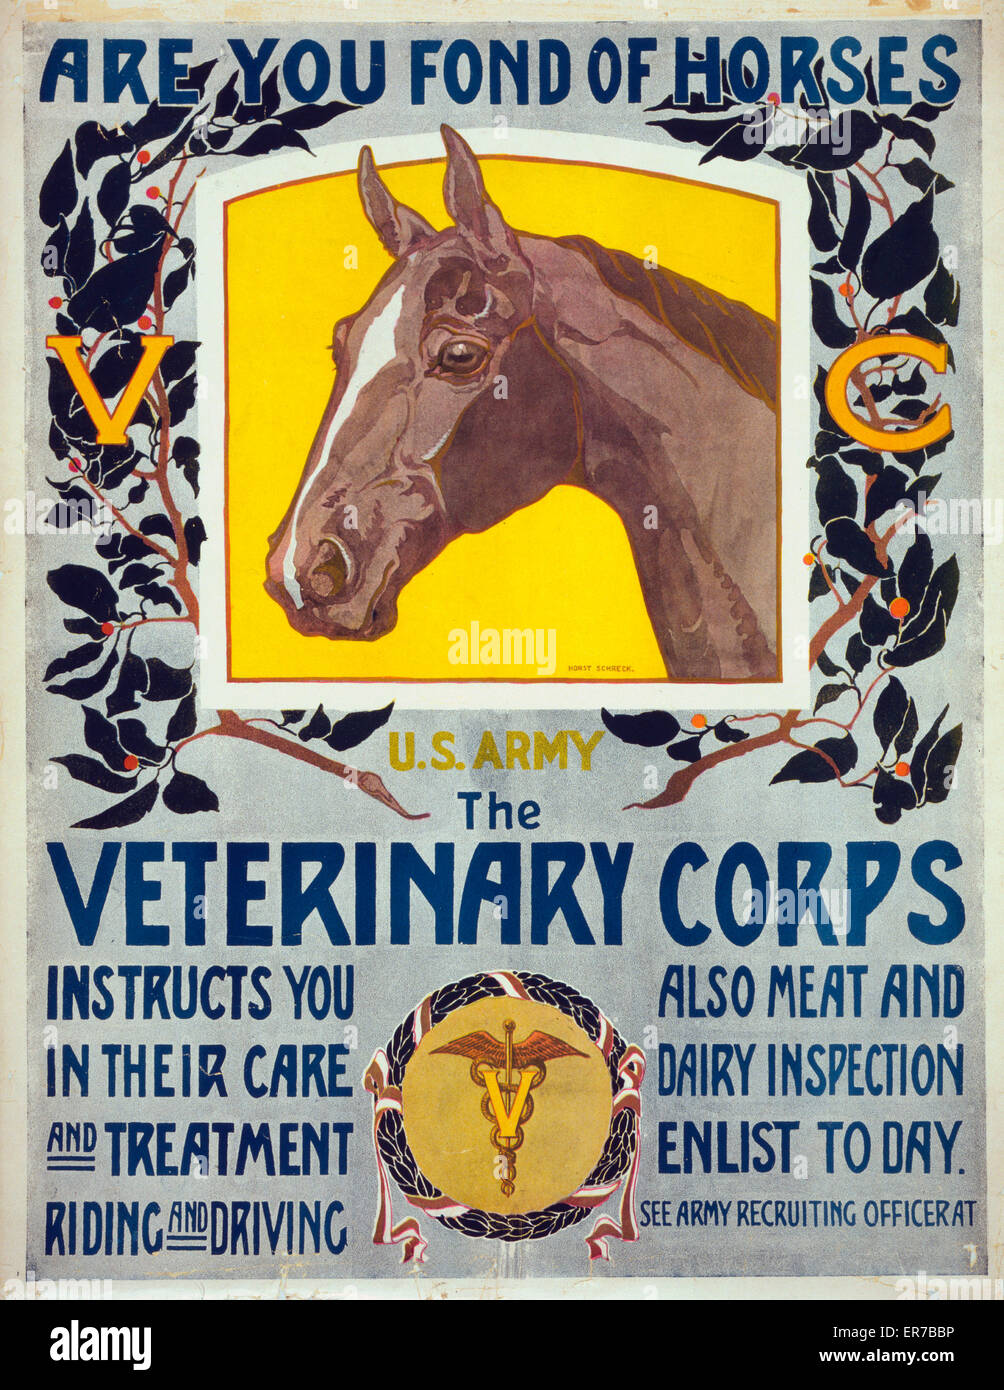 Êtes-vous amateur de chevaux - US Army - Le Corps vétérinaire vous invite à  leurs soins et de traitement, d'équitation et la conduite. Affiche montrant  un portrait d'un cheval et de l'insigne